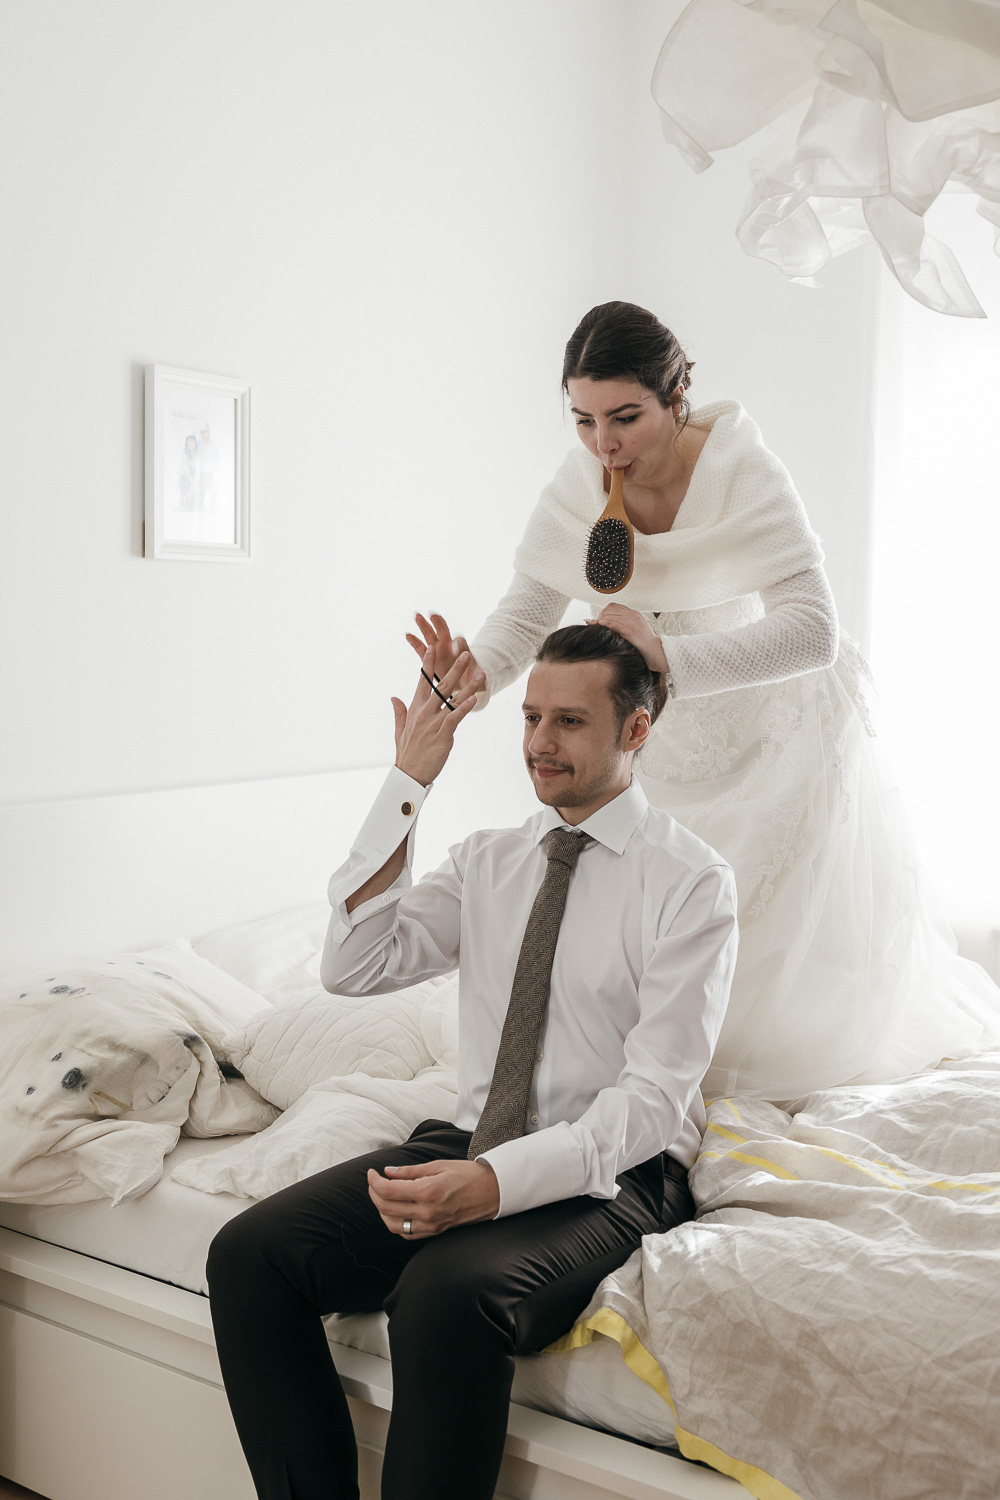 Braut hilft Bräutigam beim Styling im Schlafzimmer